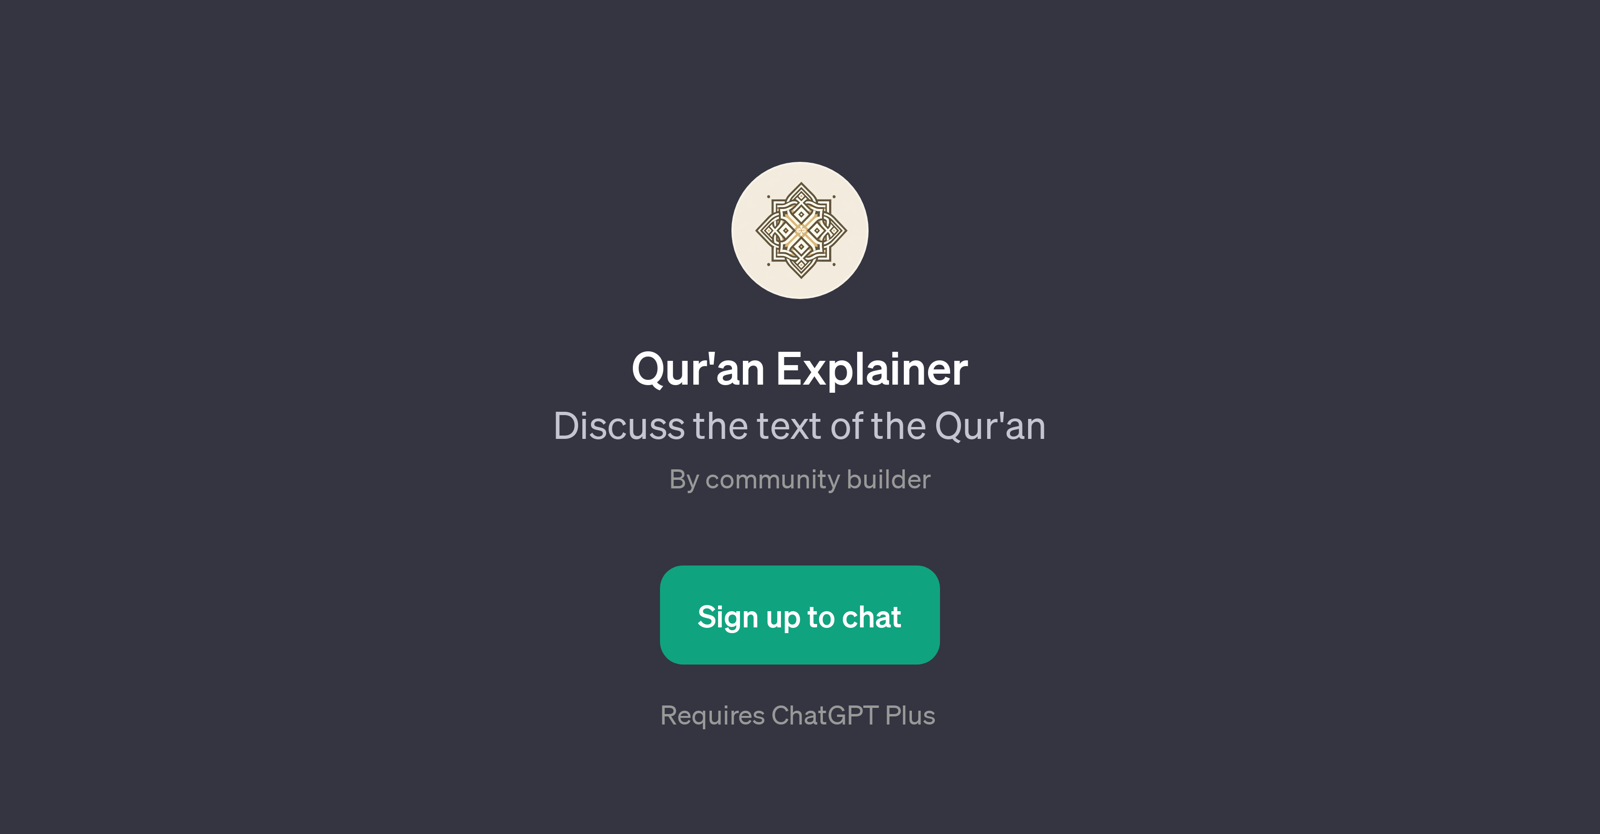 Qur'an Explainer website